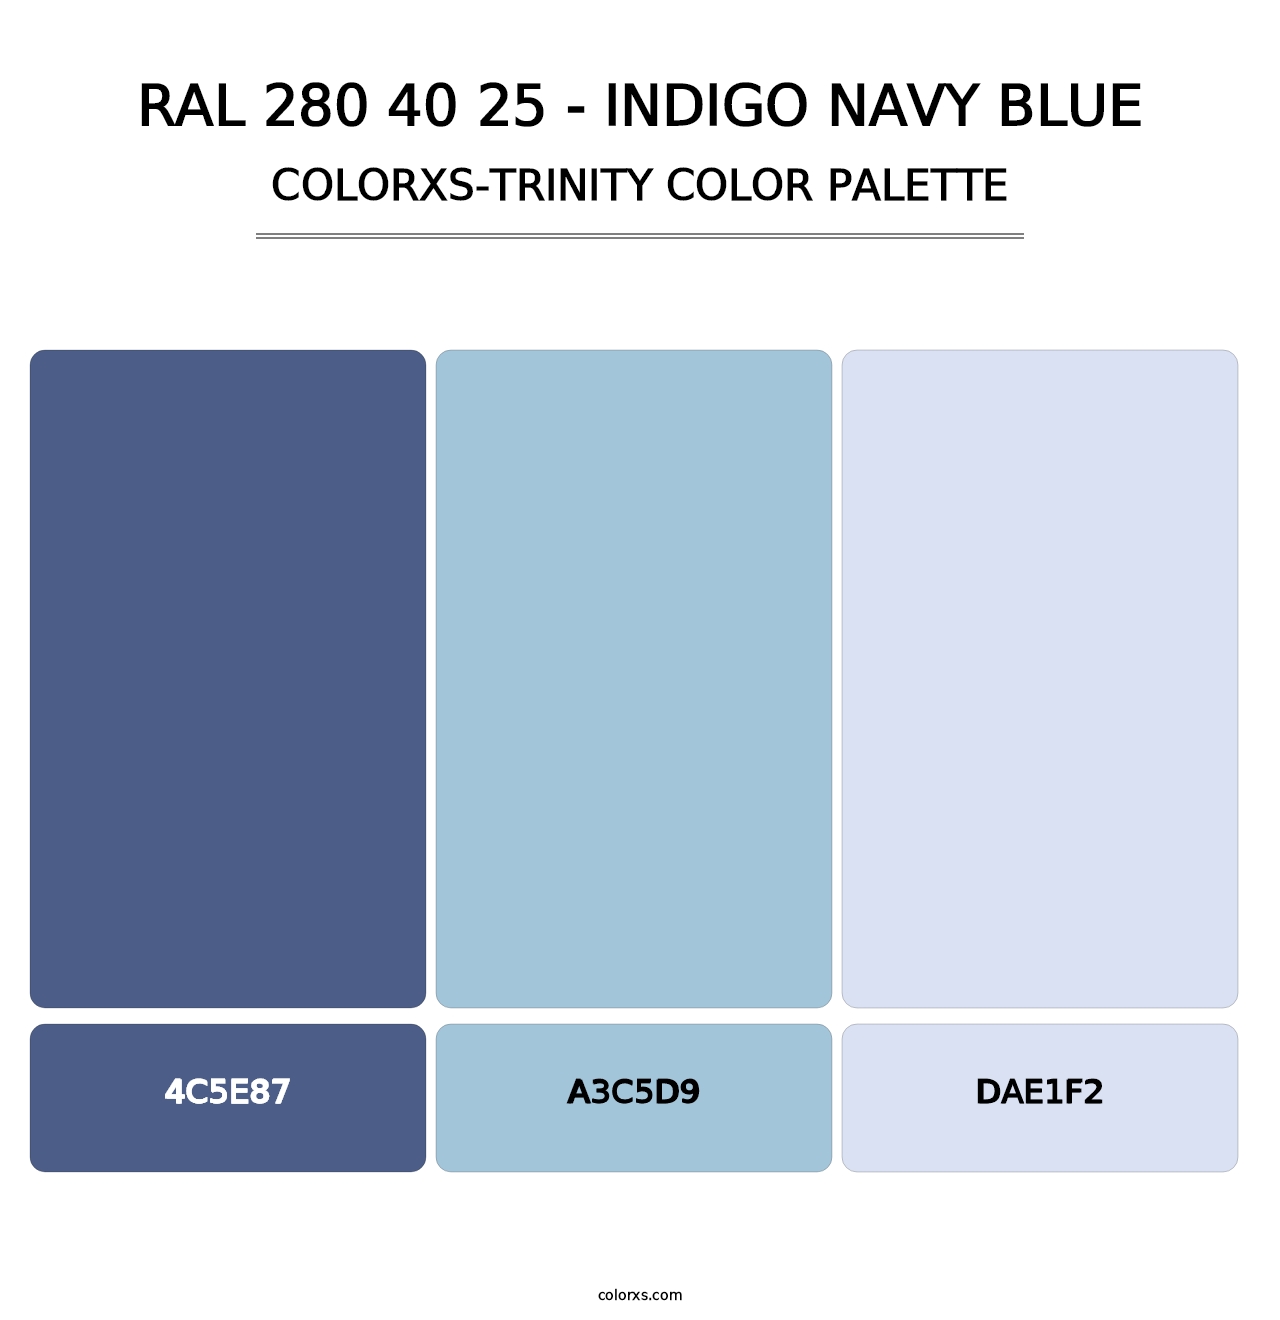 RAL 280 40 25 - Indigo Navy Blue - Colorxs Trinity Palette